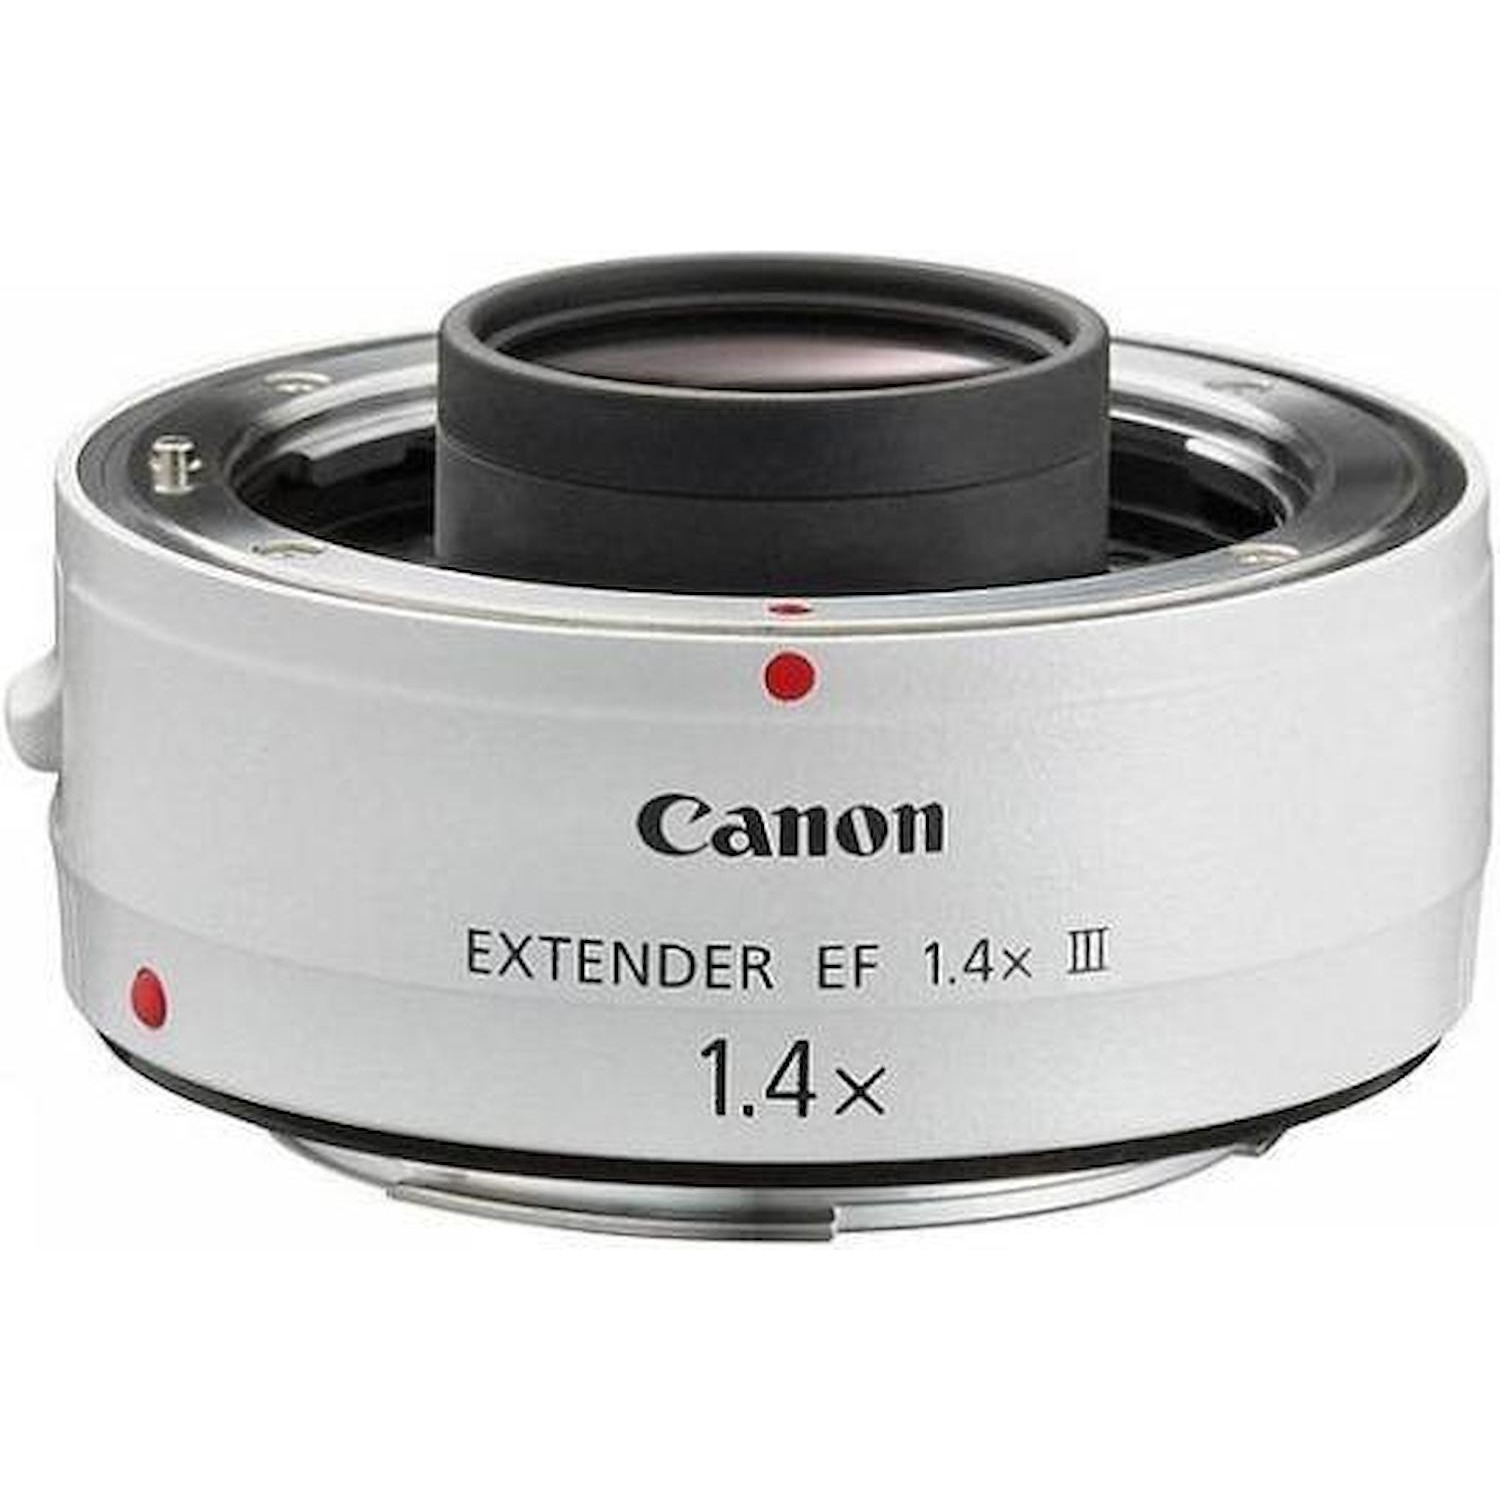 Immagine per Extender Canon EF 1.4X III da DIMOStore